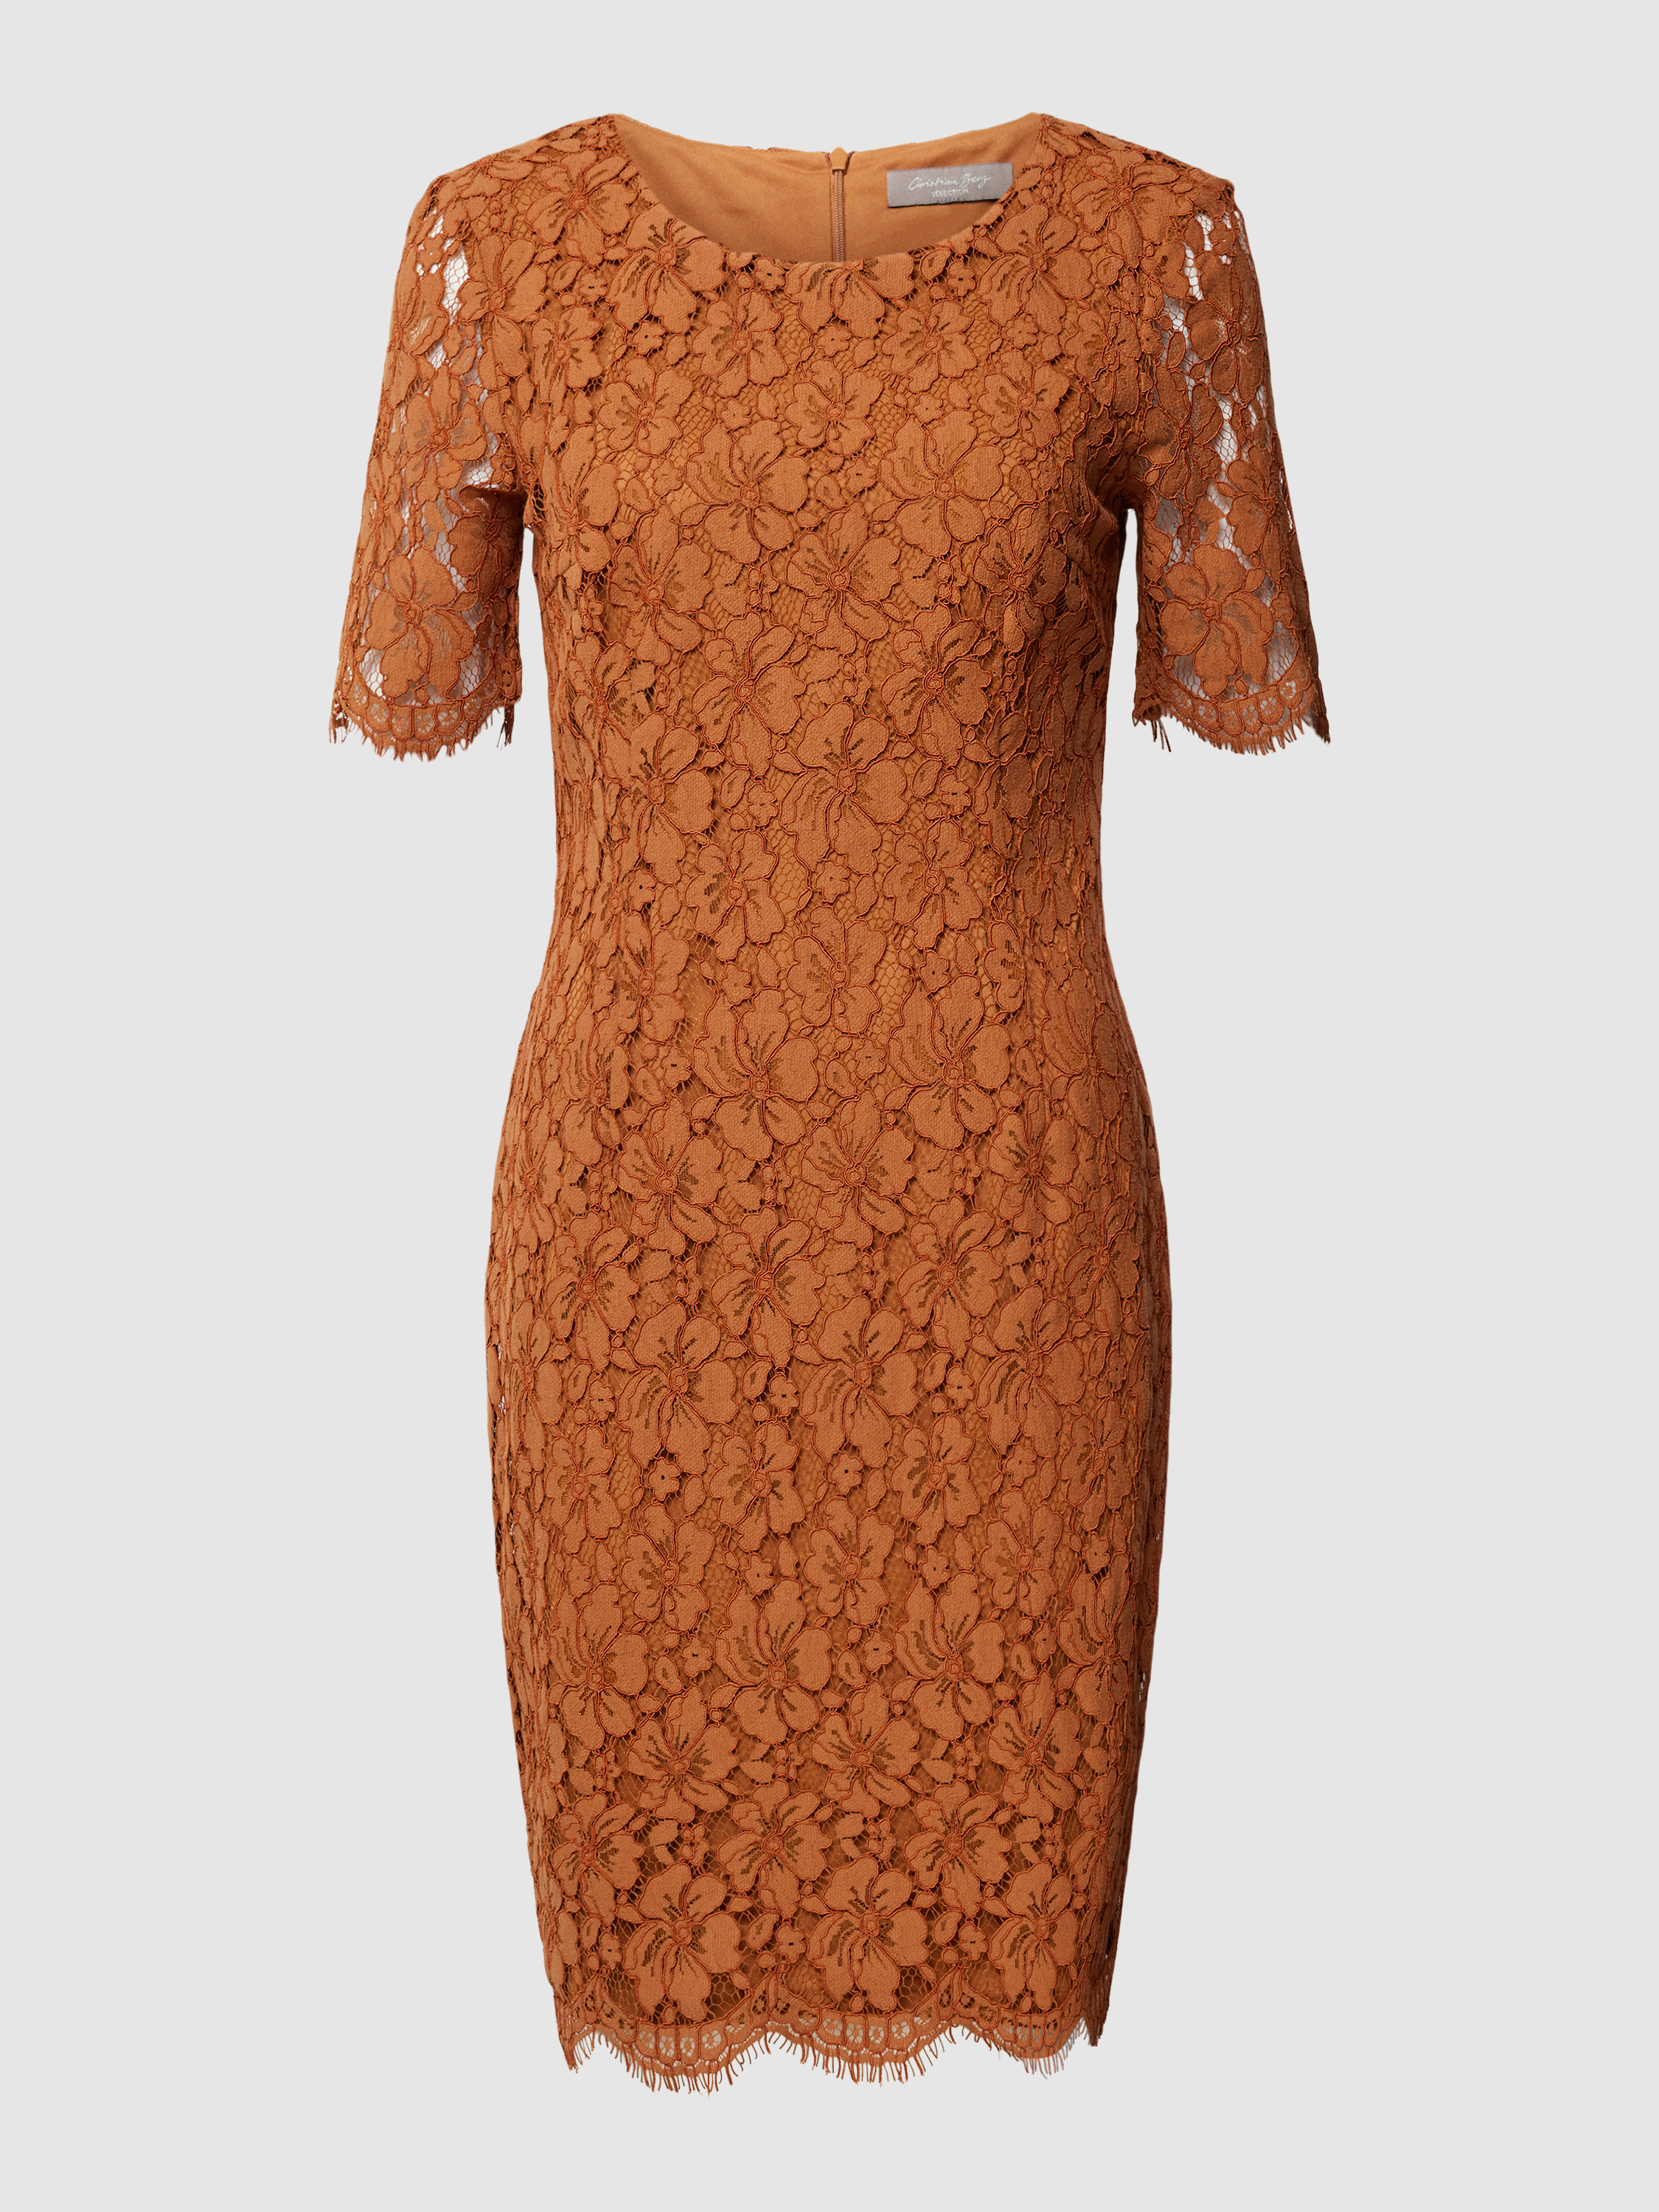 Платье женское Christian Berg Woman Selection 1826880 коричневое 38(доставка из-за рубежа)